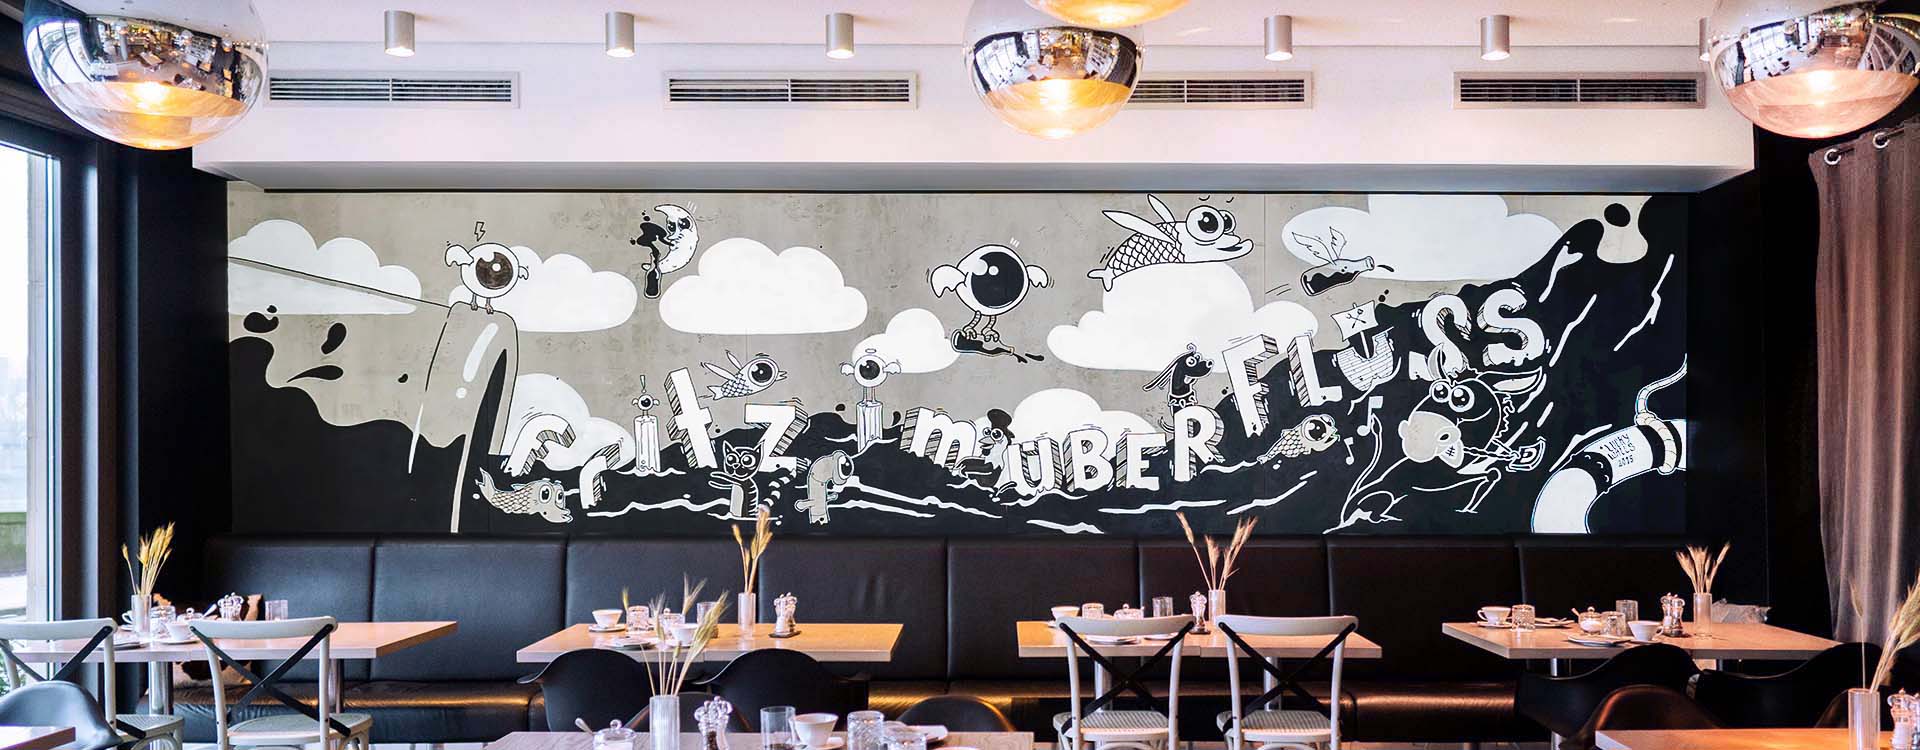 Designkonzept: Wandbild für ein restaurant in Zusammenarbeit mit Fritz Cola.